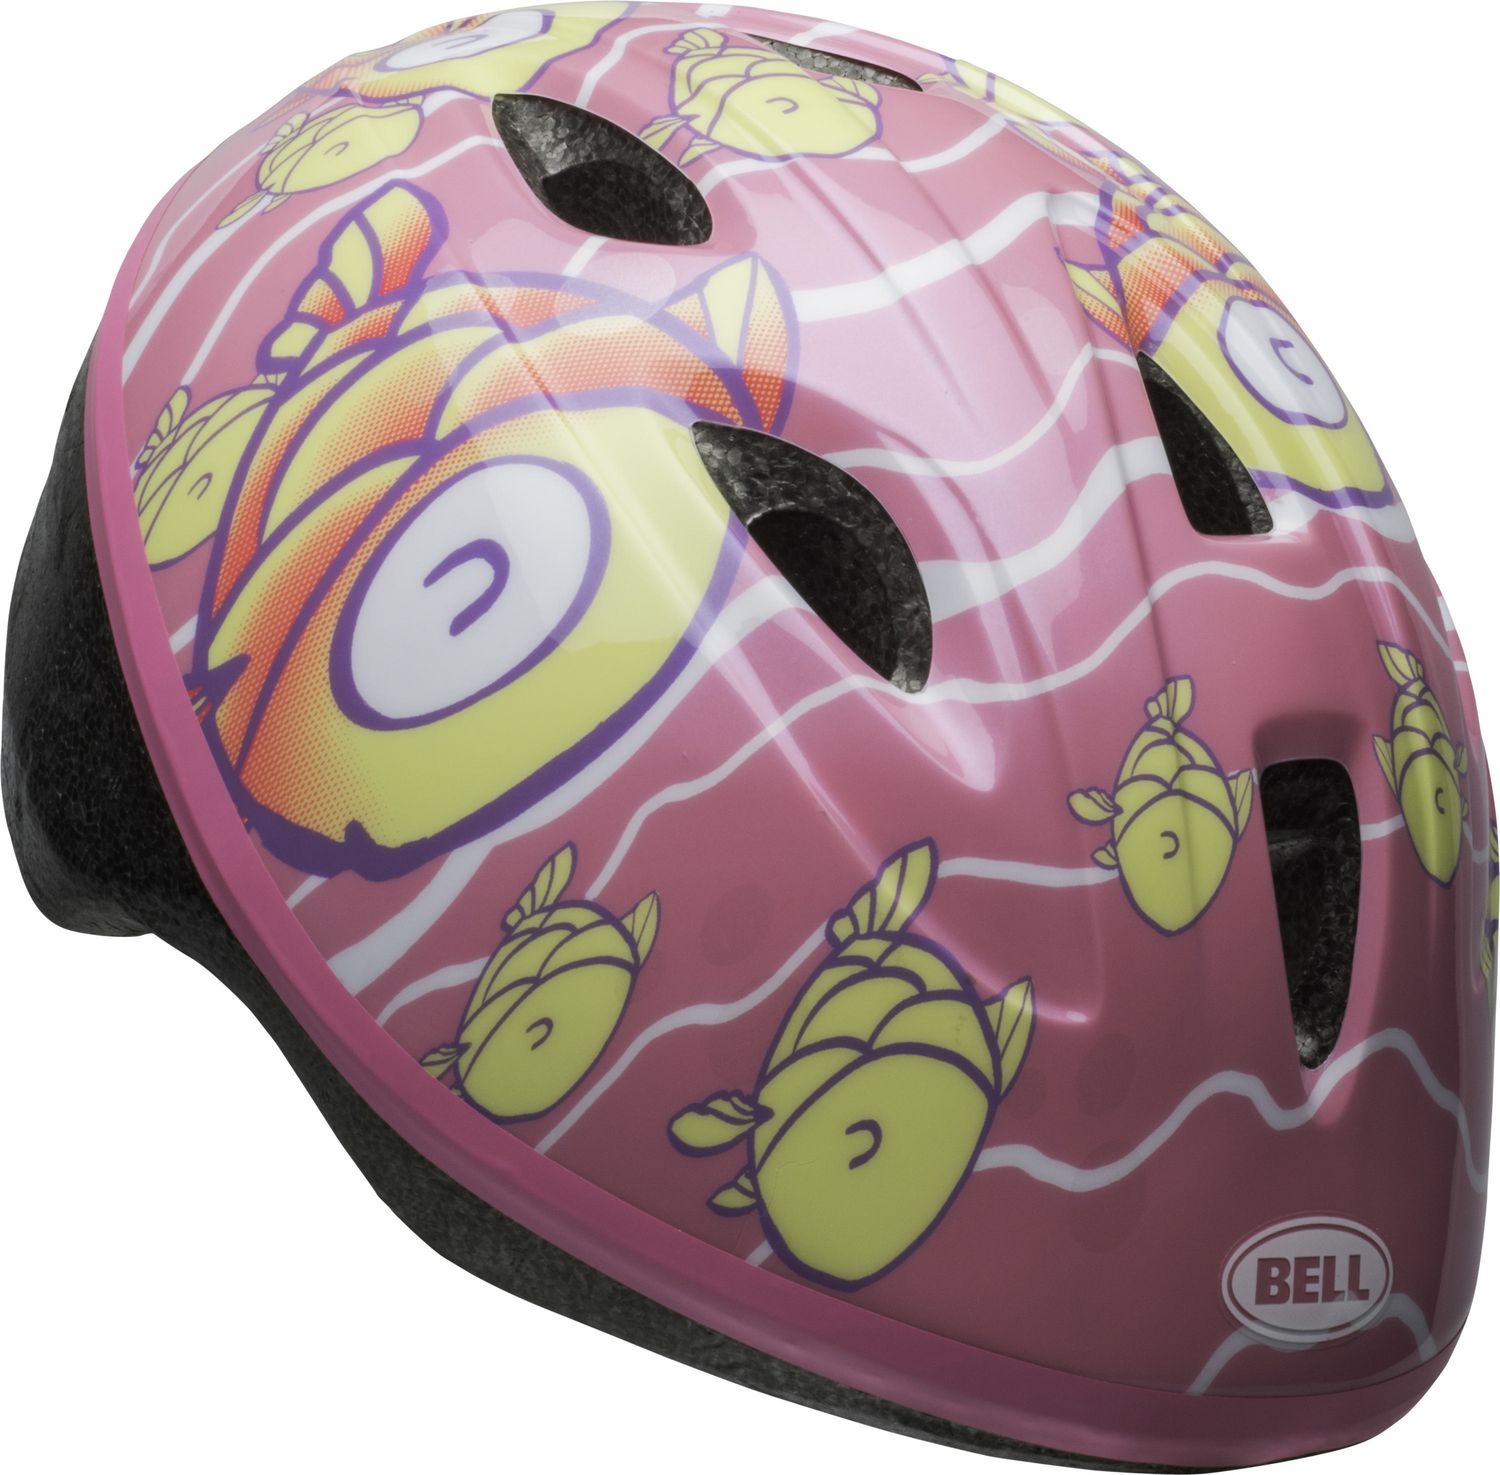 bell infant bike helmet